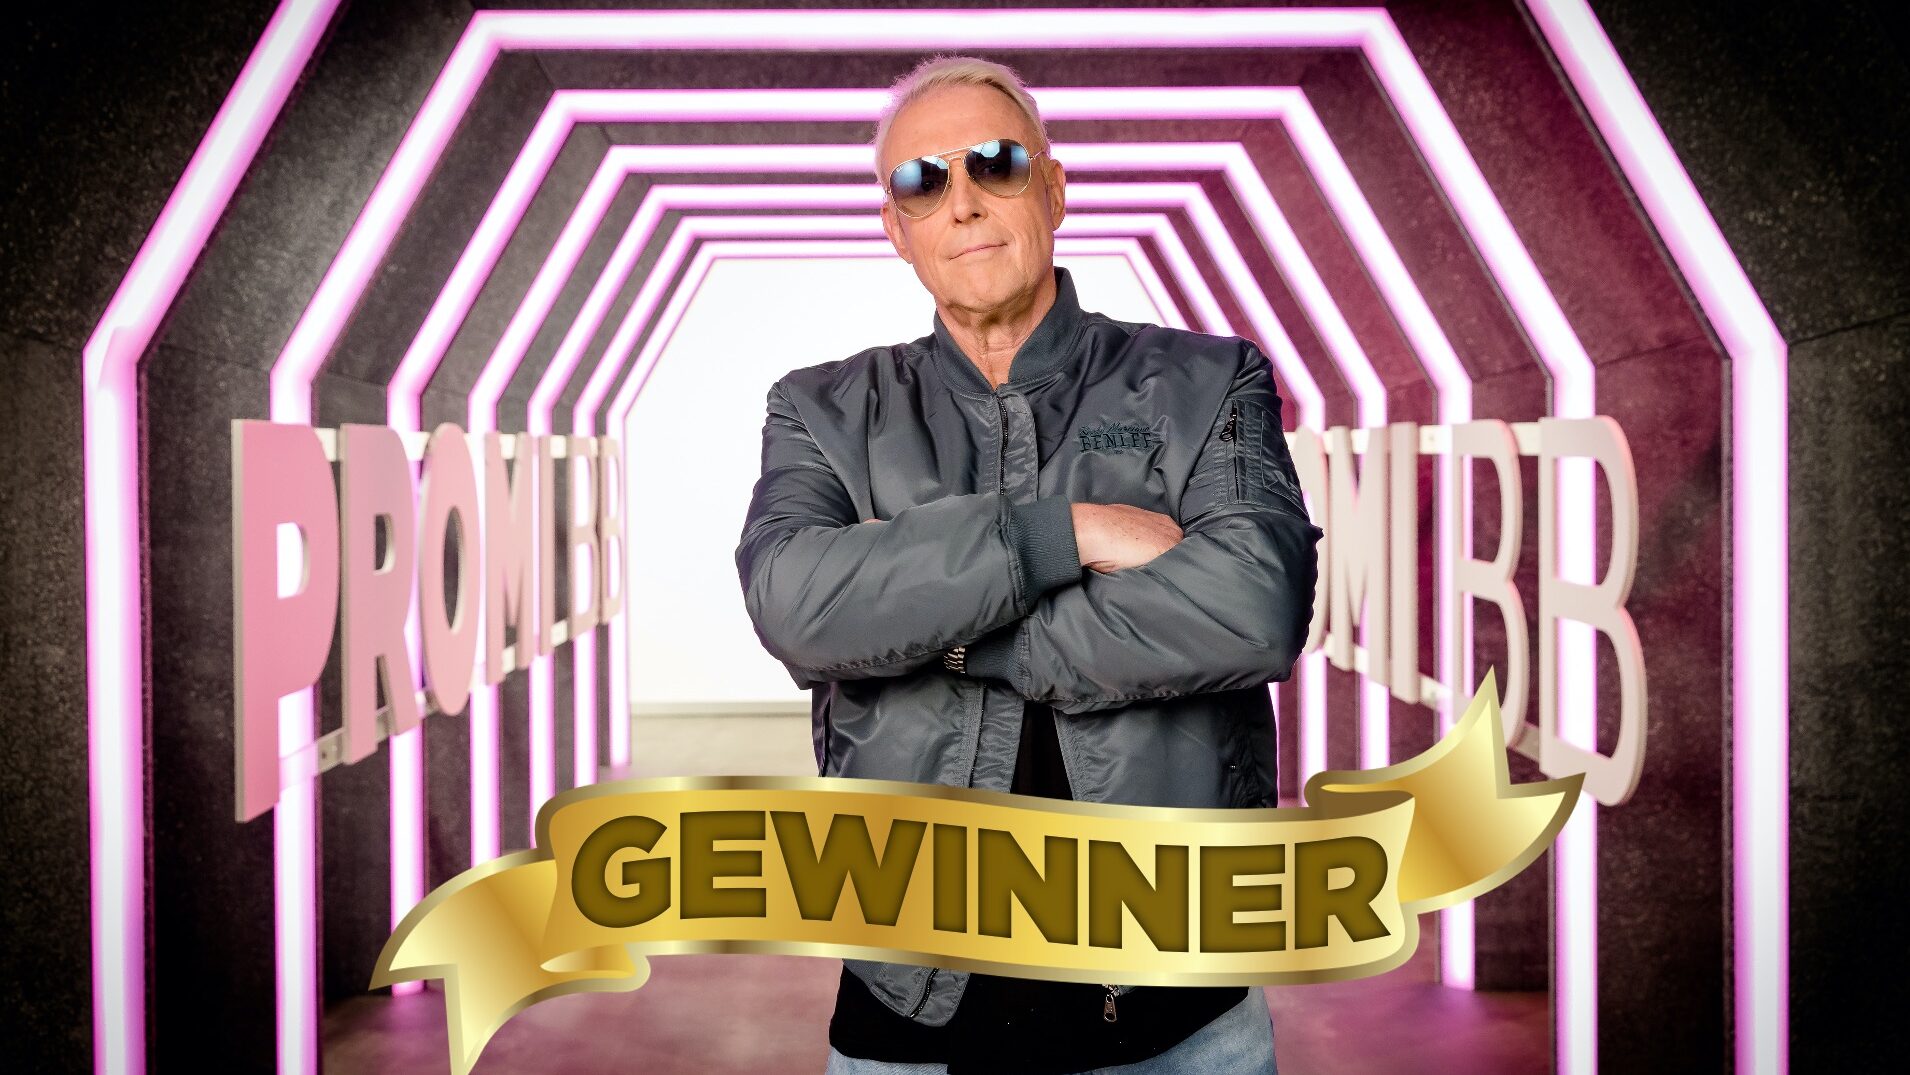 Promi Big Brother 2022 Gewinner: Rainer Gottwald gewinnt Staffel 10 8